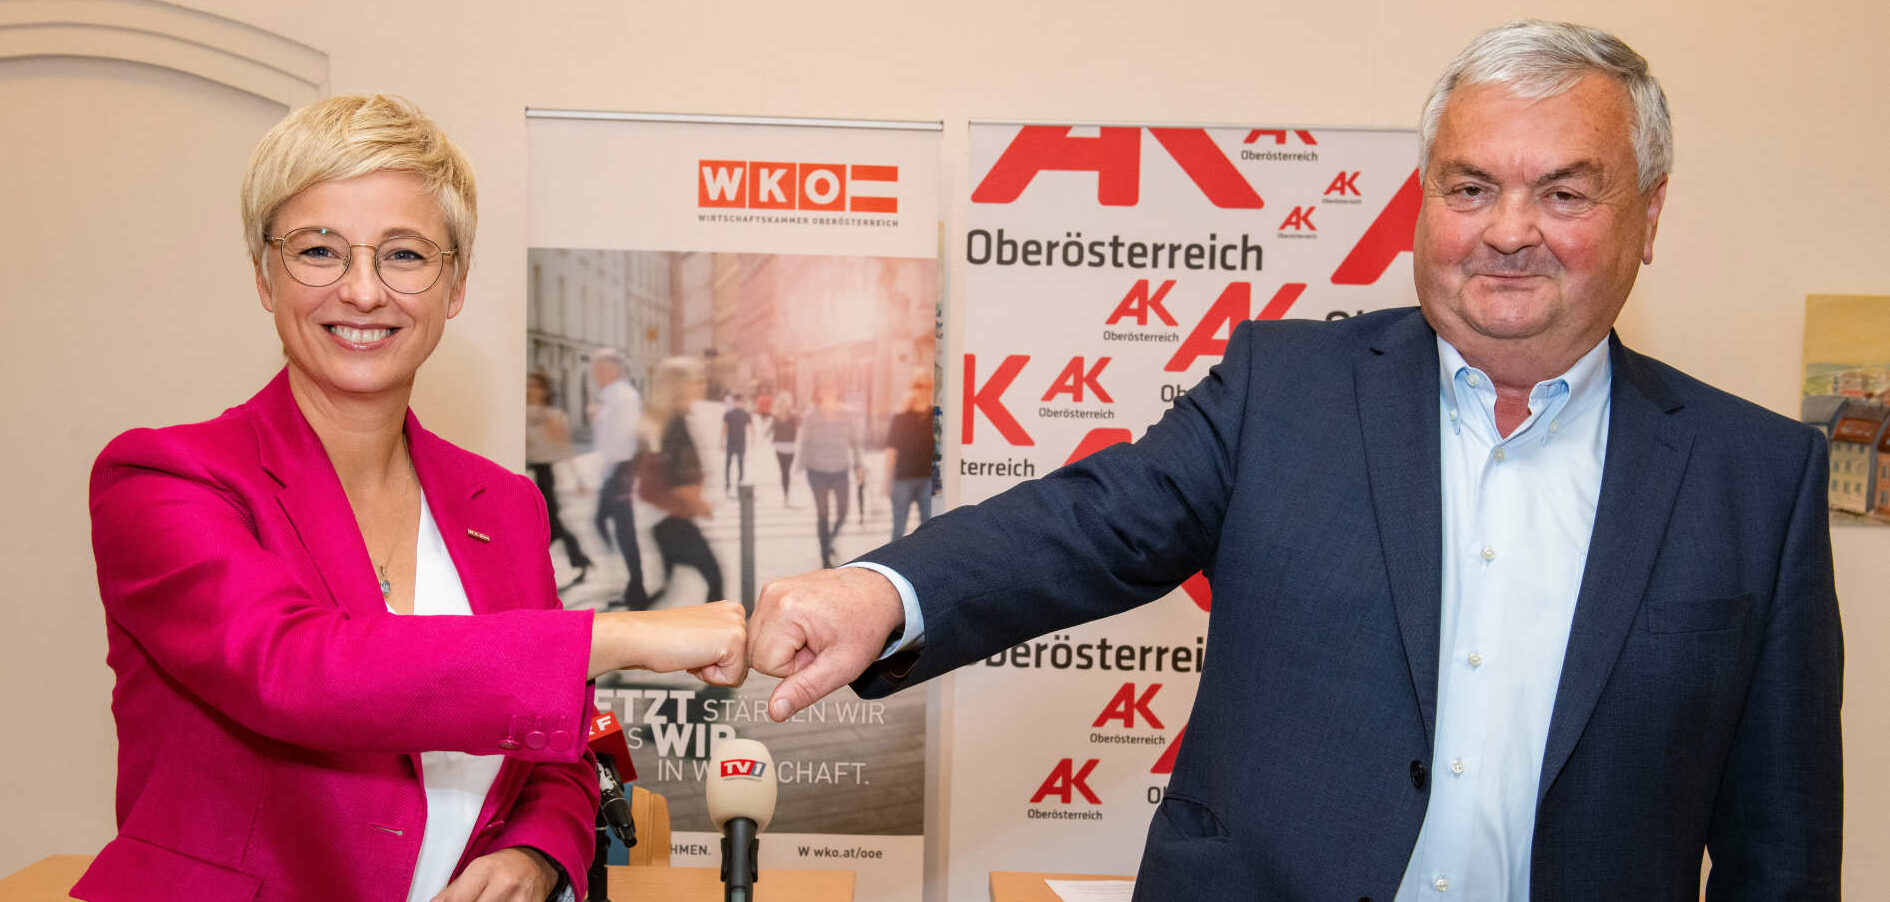 WKOÖ-Präsidentin Doris Hummer und AK-Präsident Johann Kalliauer wollen künftig wieder besser zusammenarbeiten.